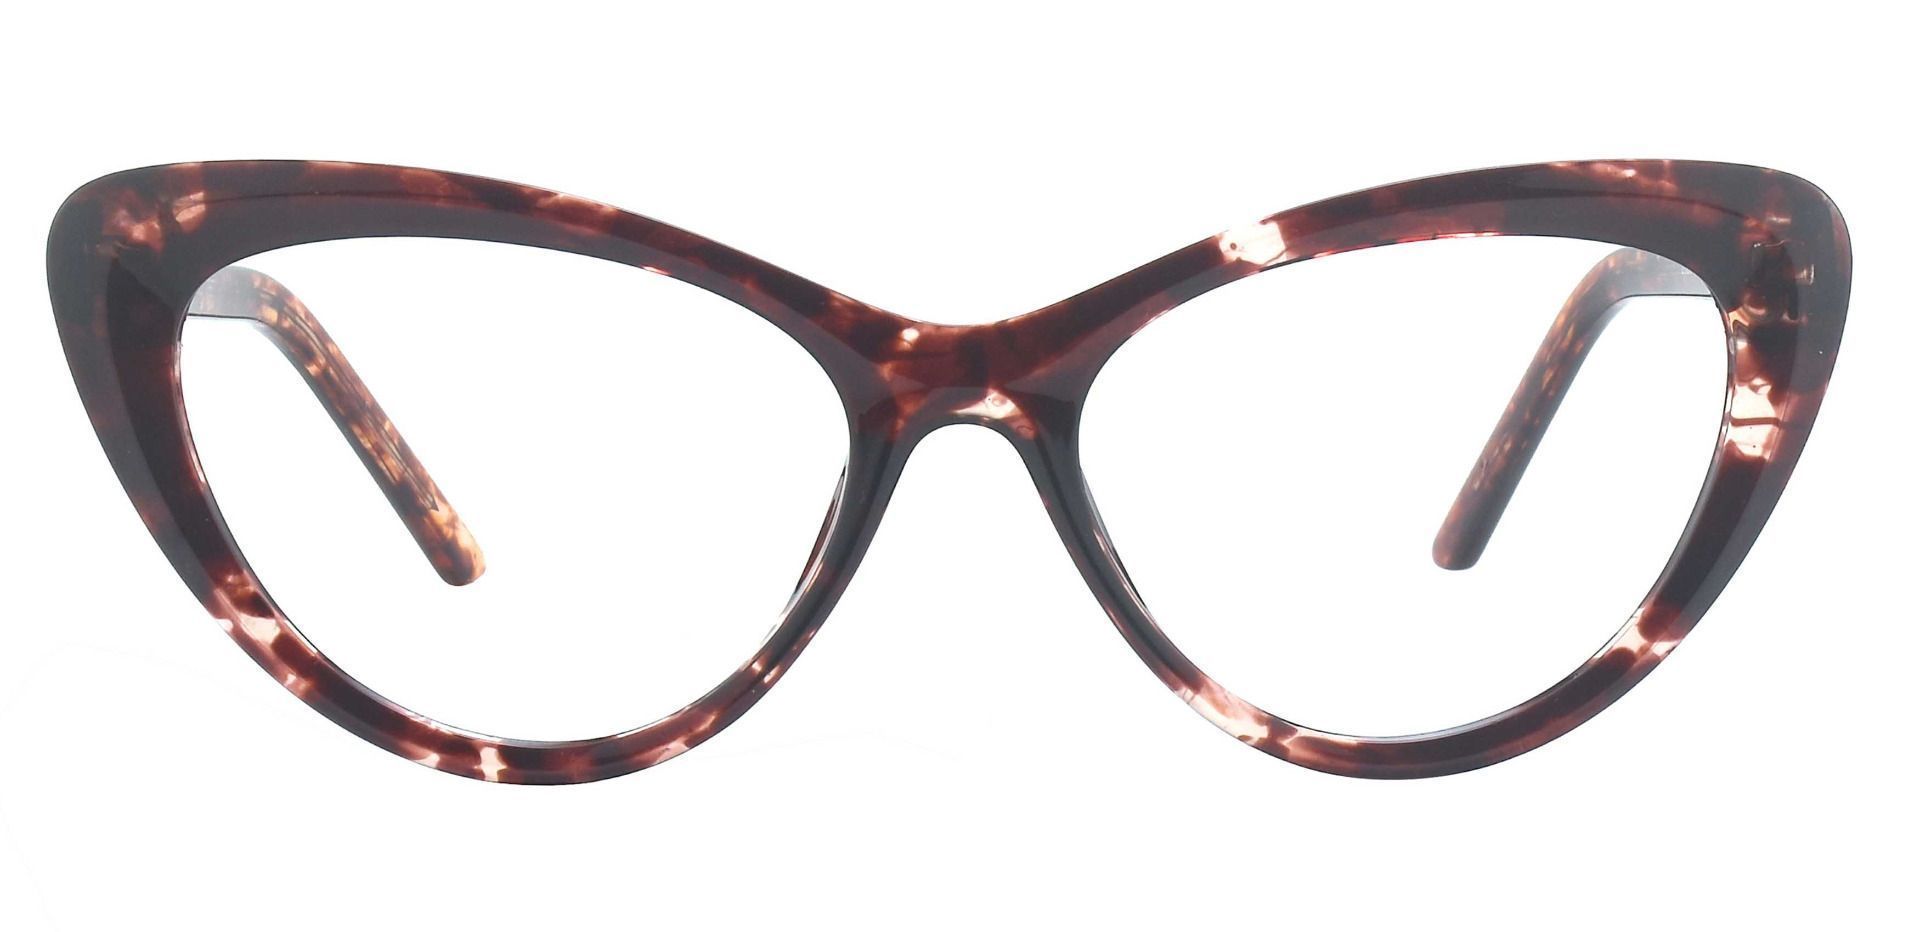 Gemini Cat Eye Prescription Glasses - Tortoise